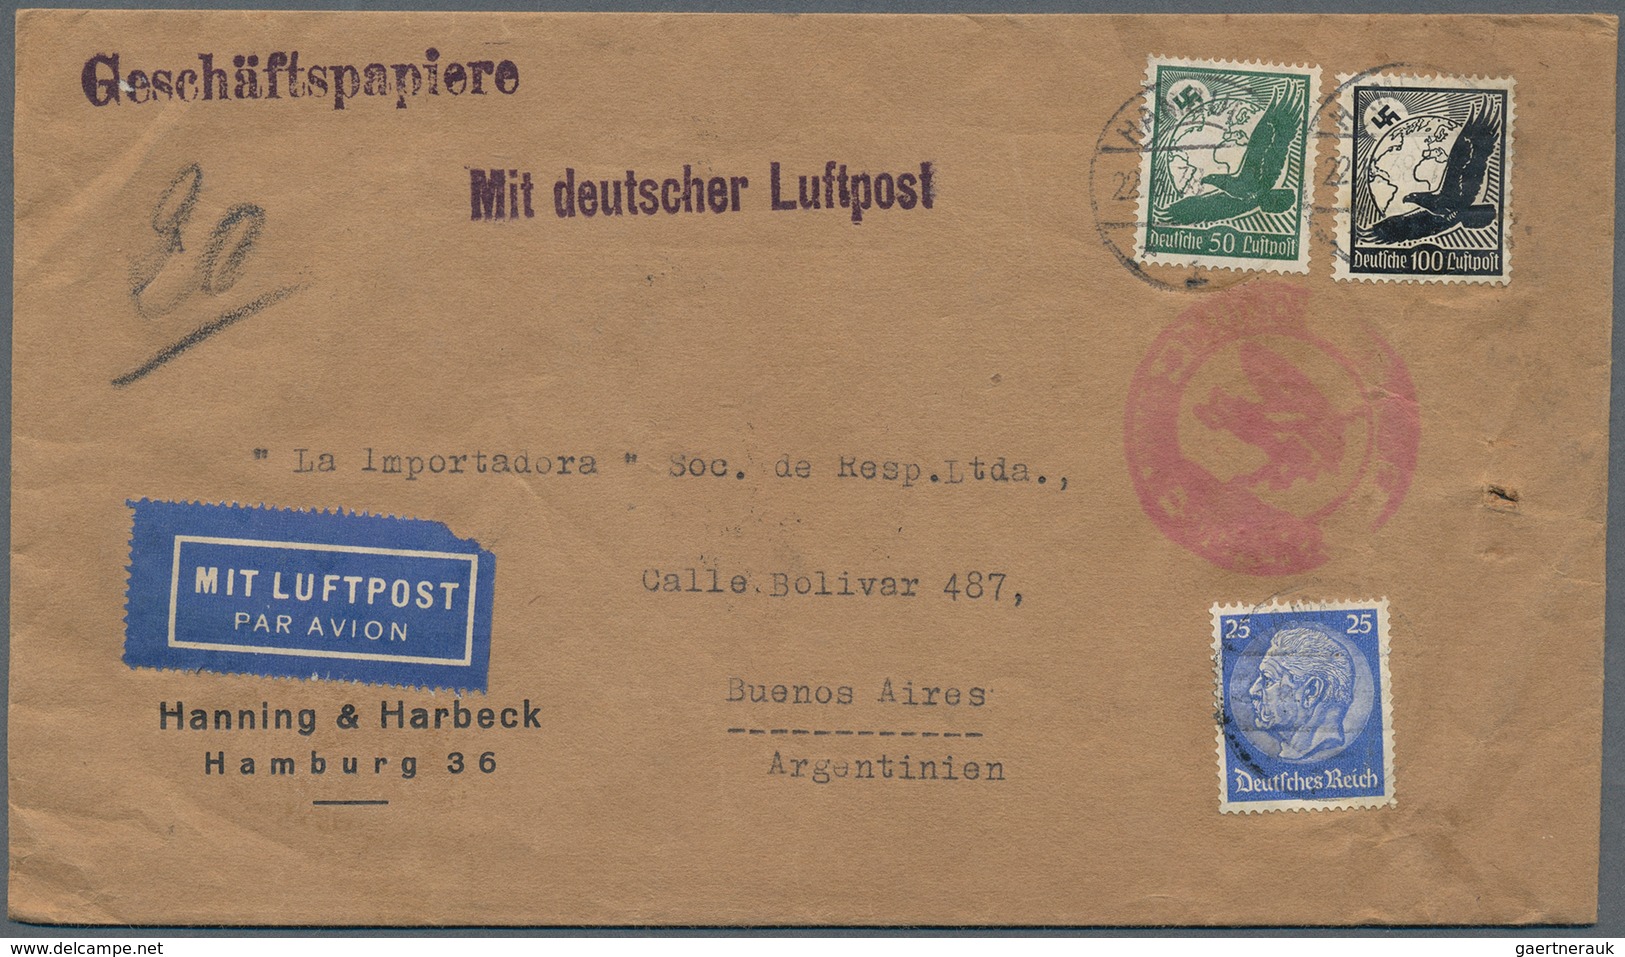 24840 Zeppelinpost Deutschland: 1909/37, Sammlung inkl. Doubletten mit ca. Zeppelin- und Luftpostbelege, d